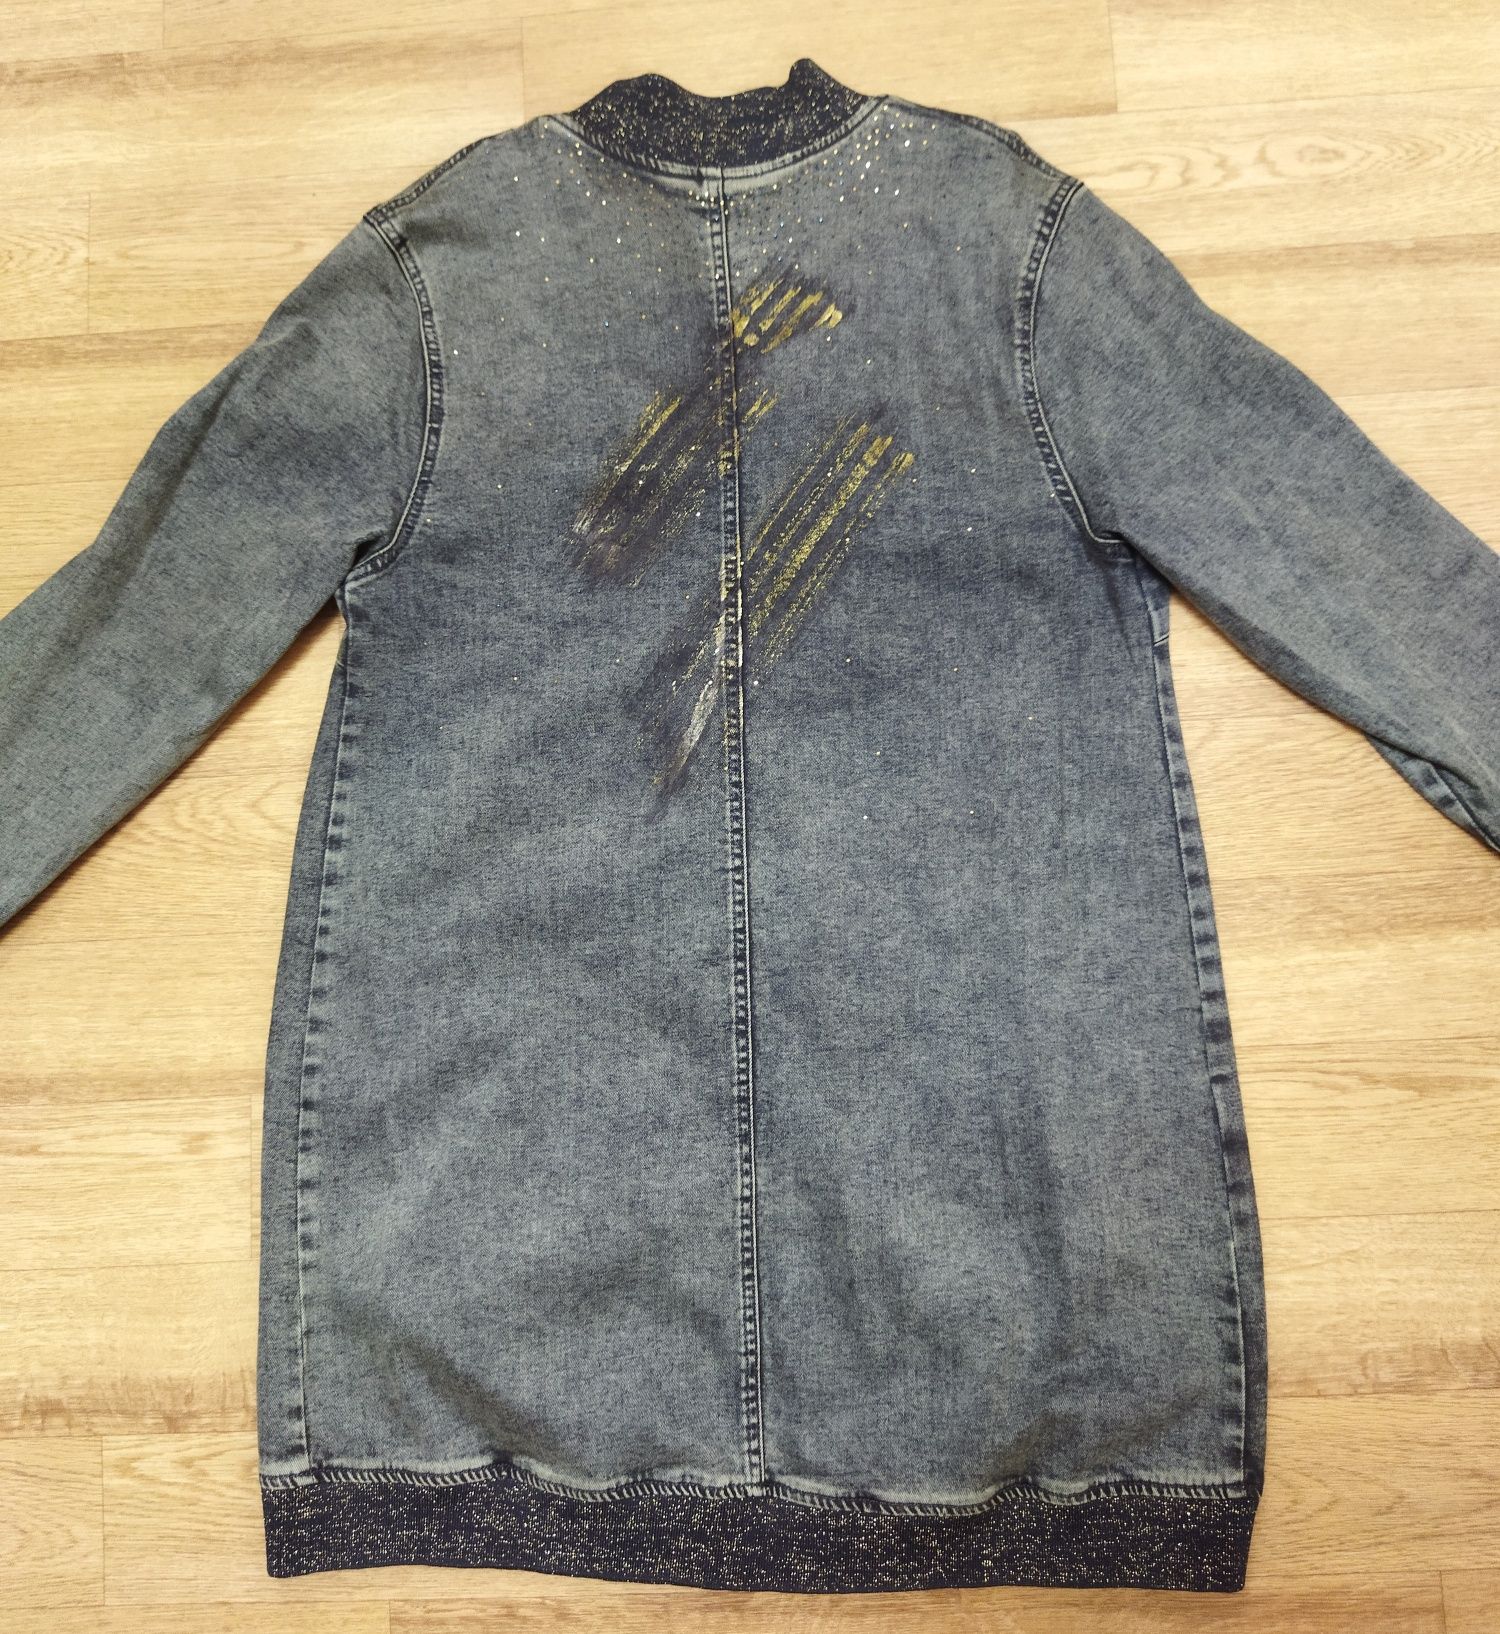 Куртка джинсовая женская 50-52